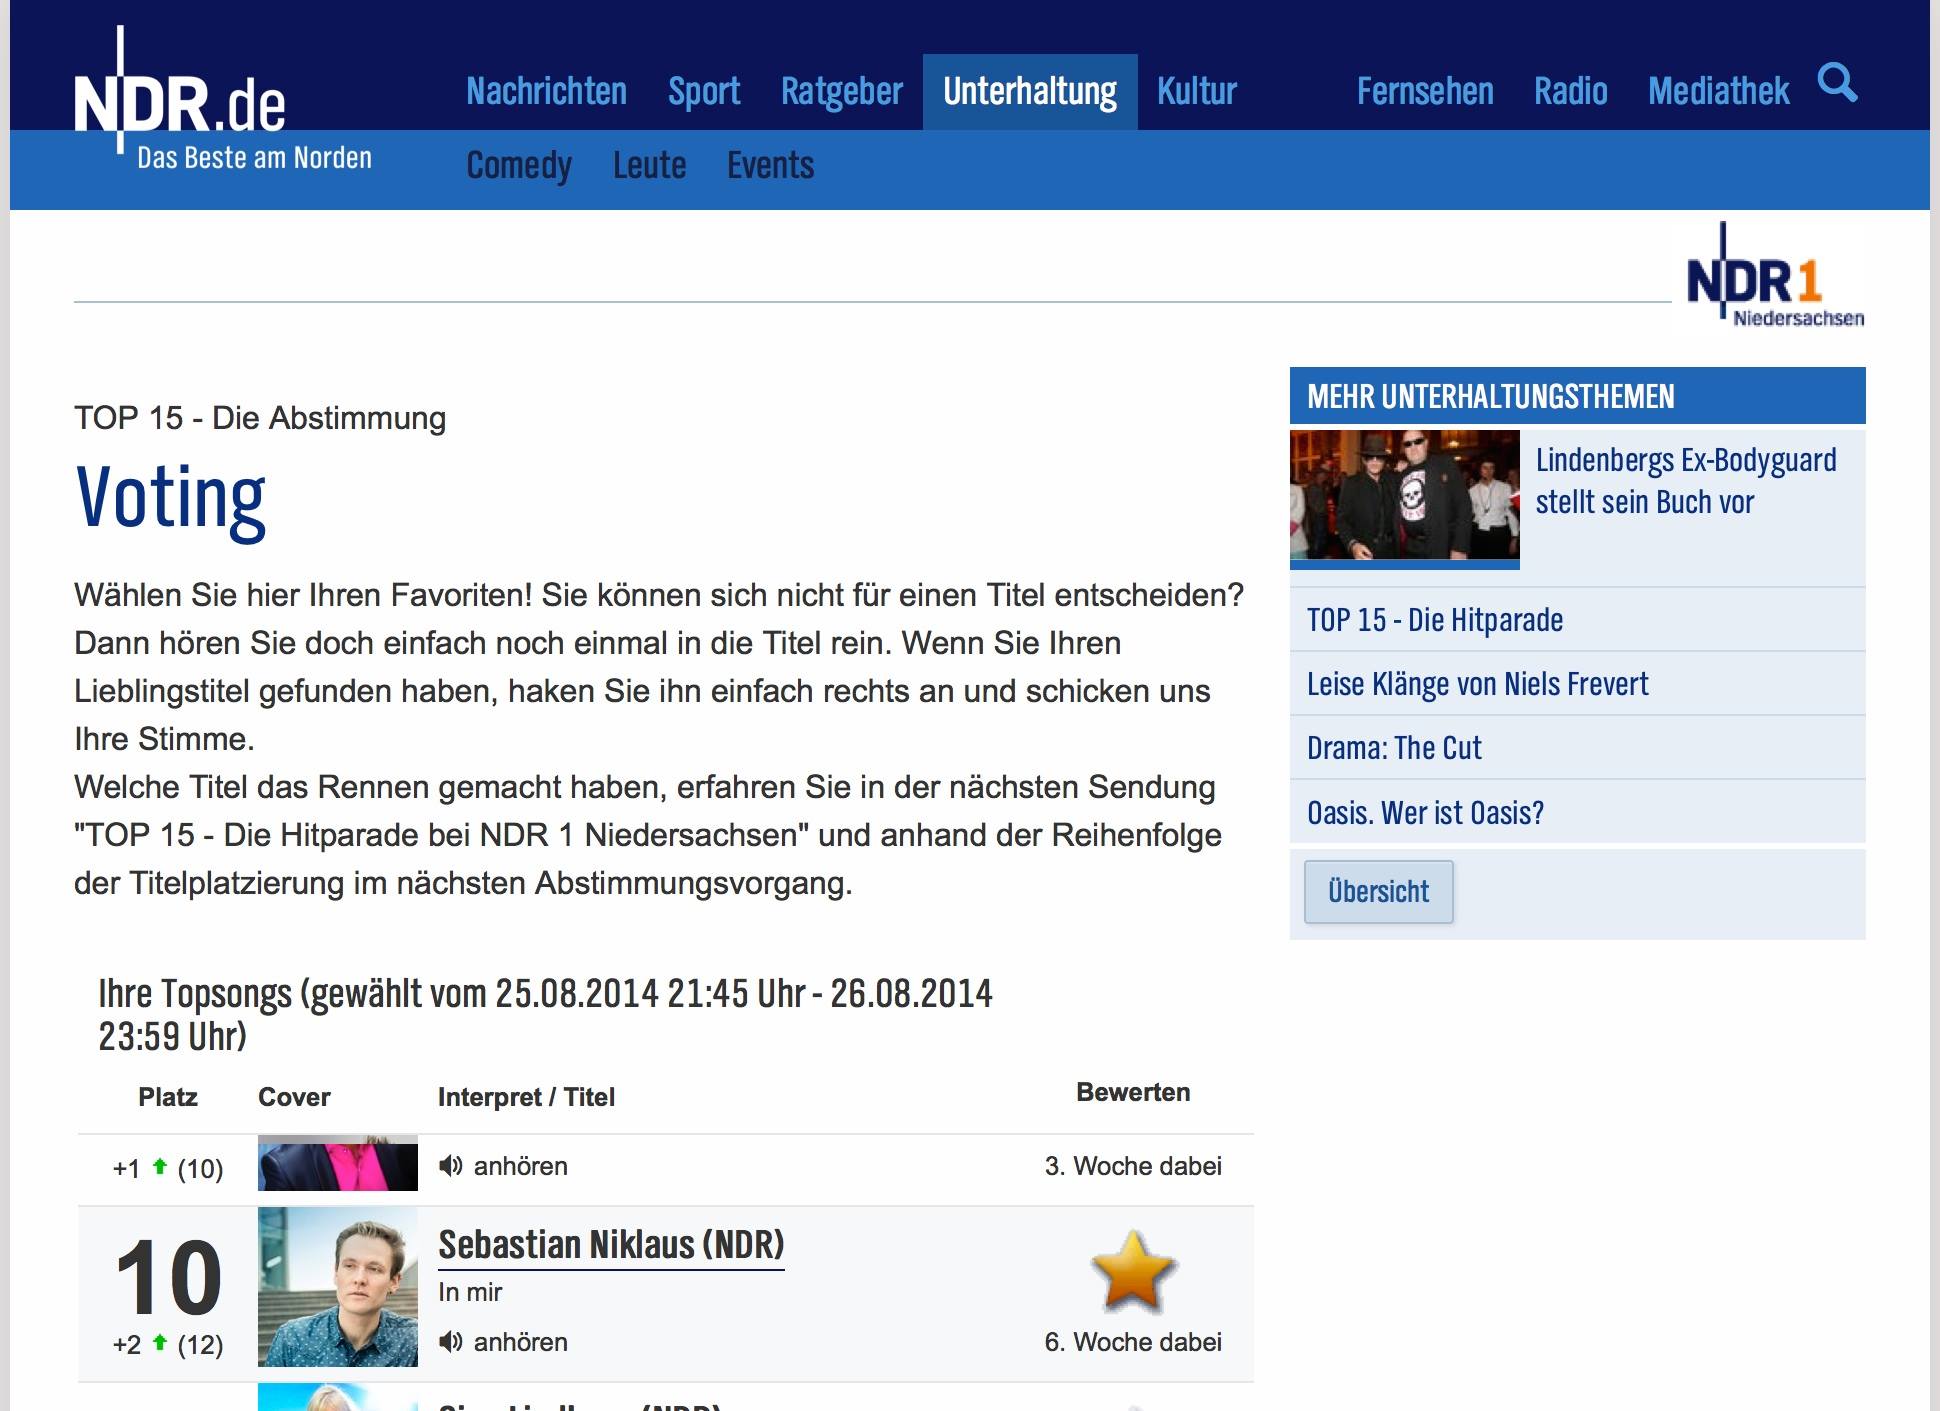 In mir bei der NDR1 Niedersachsen Top15 Hitparade - 6. Woche